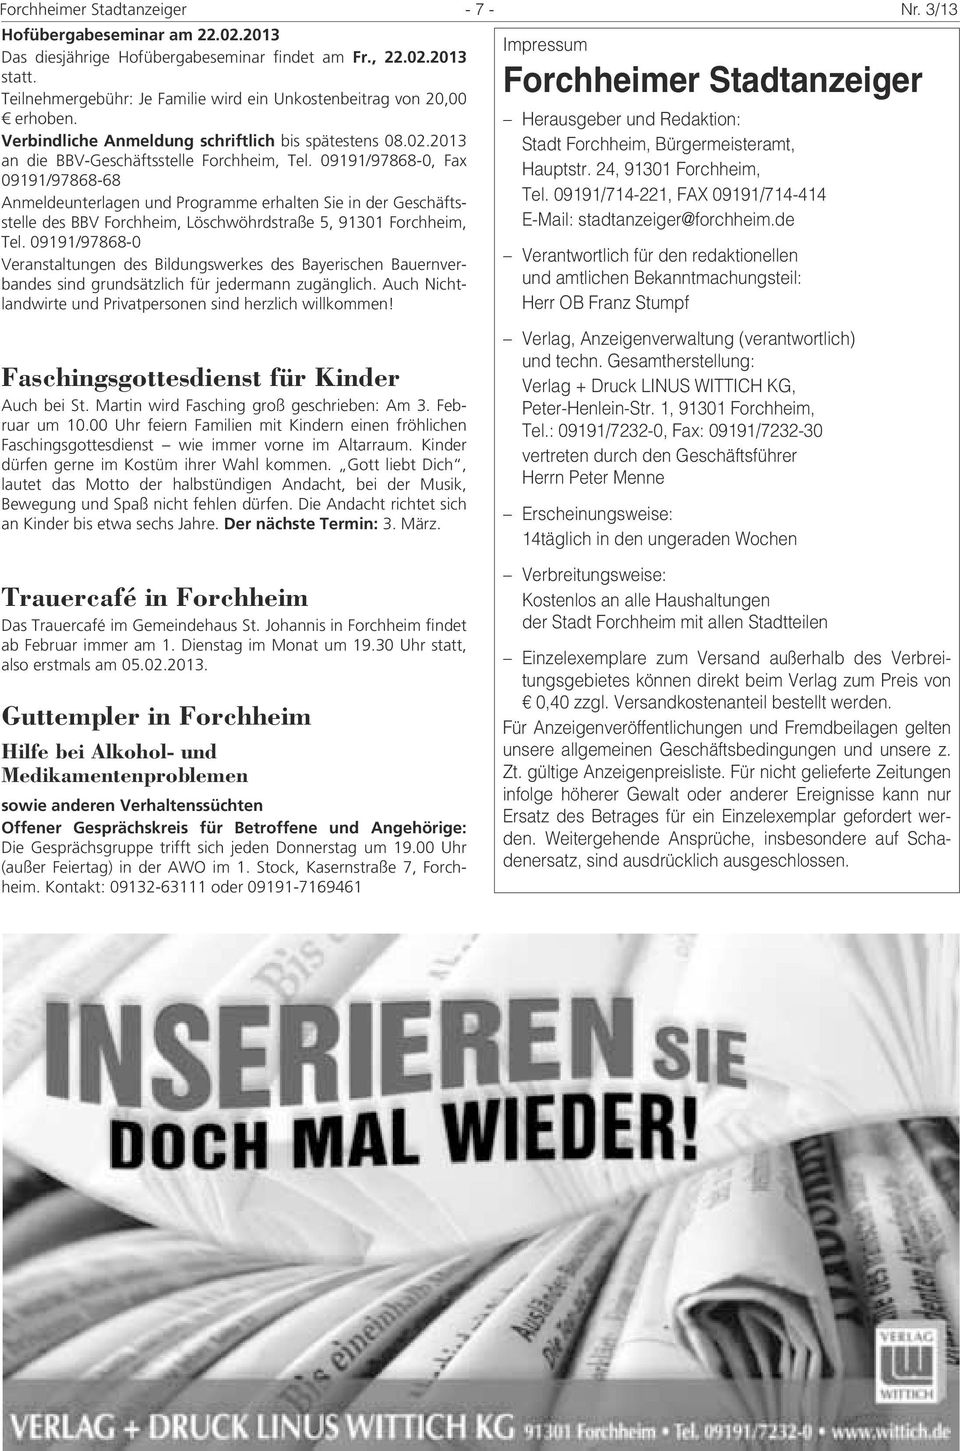 09191/97868-0, Fax 09191/97868-68 Anmeldeunterlagen und Programme erhalten Sie in der Geschäftsstelle des BBV Forchheim, Löschwöhrdstraße 5, 91301 Forchheim, Tel.